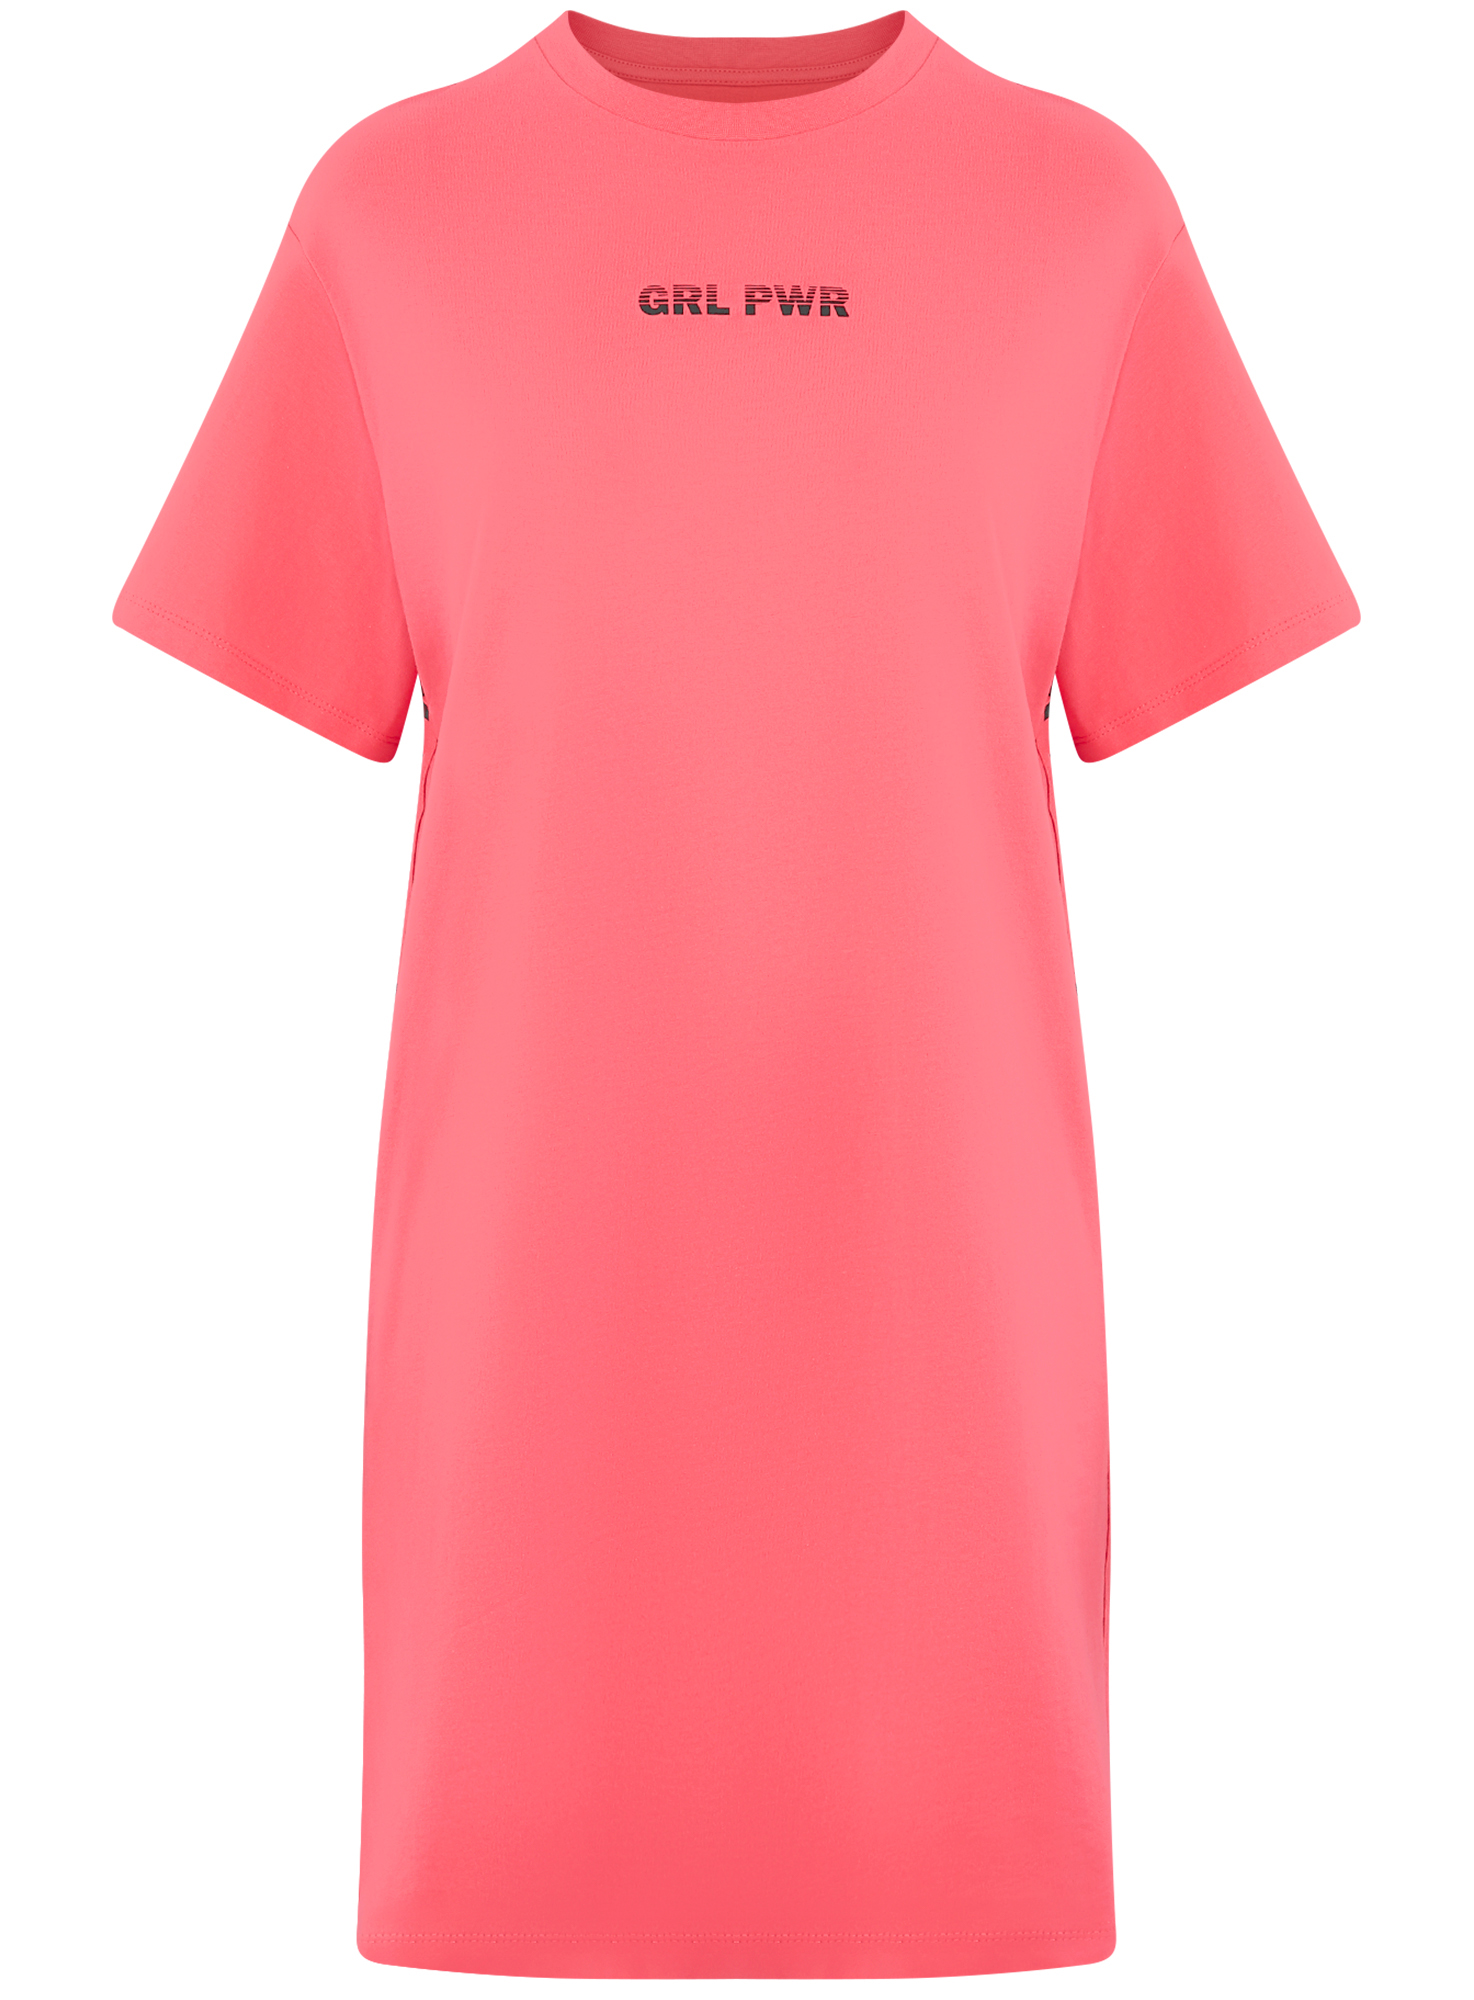 Платье женское oodji 14008041-1 розовое 2XS